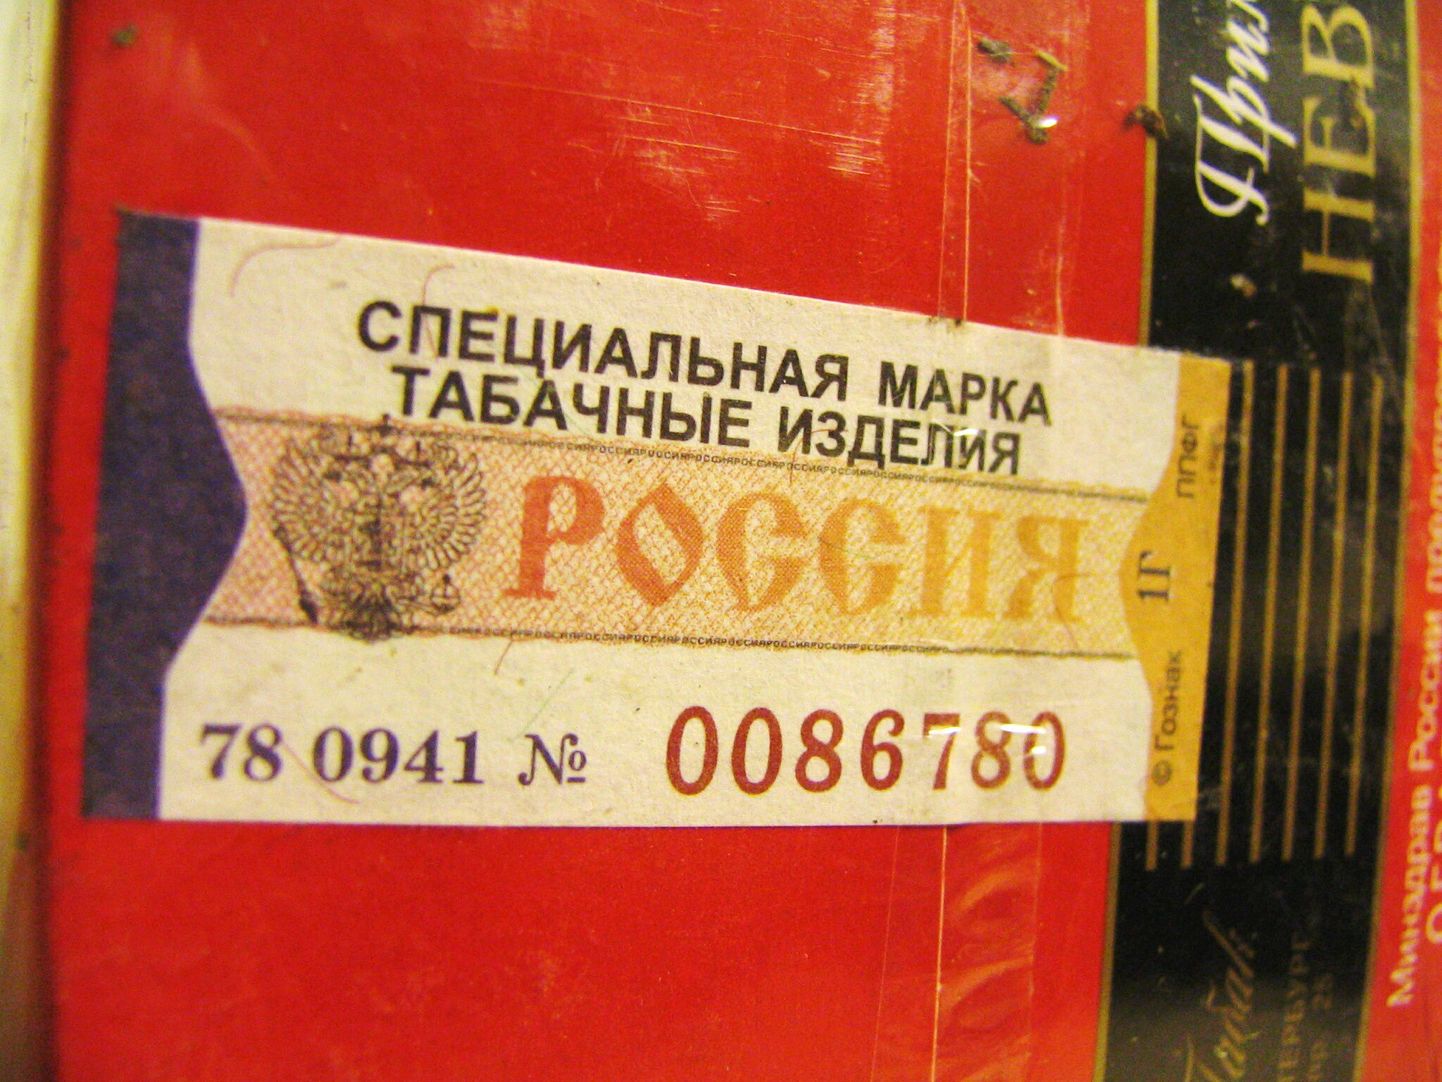 Venemaa maksumärk suitsupakil.